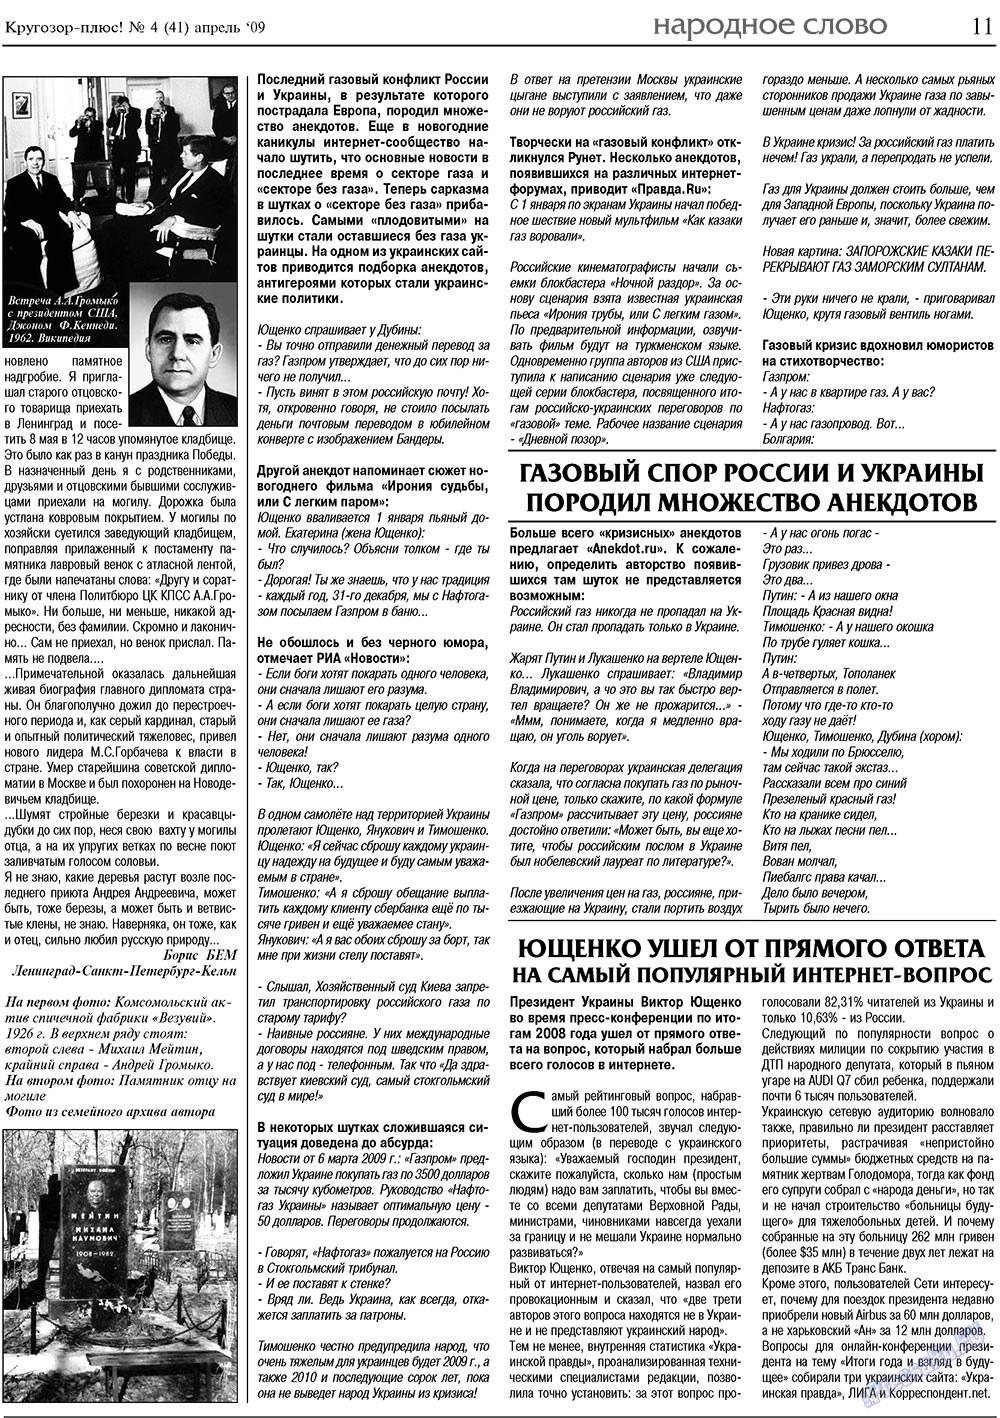 Кругозор плюс!, газета. 2009 №4 стр.11